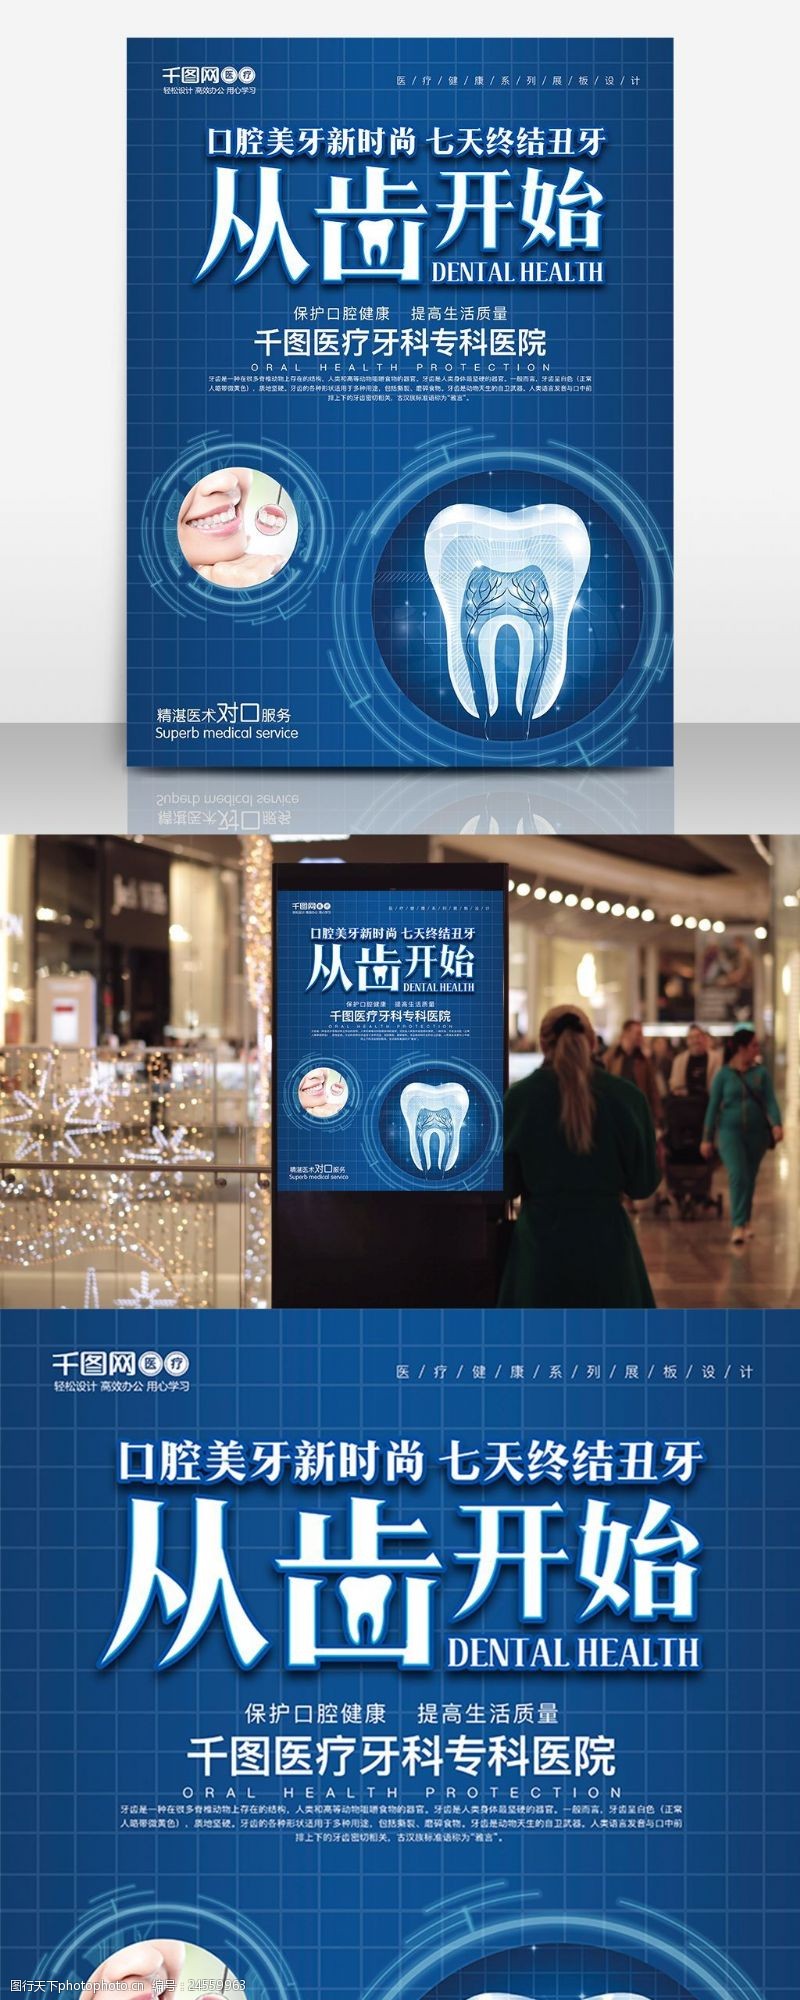 洗牙口保护腔健康专业牙科医院海报设计